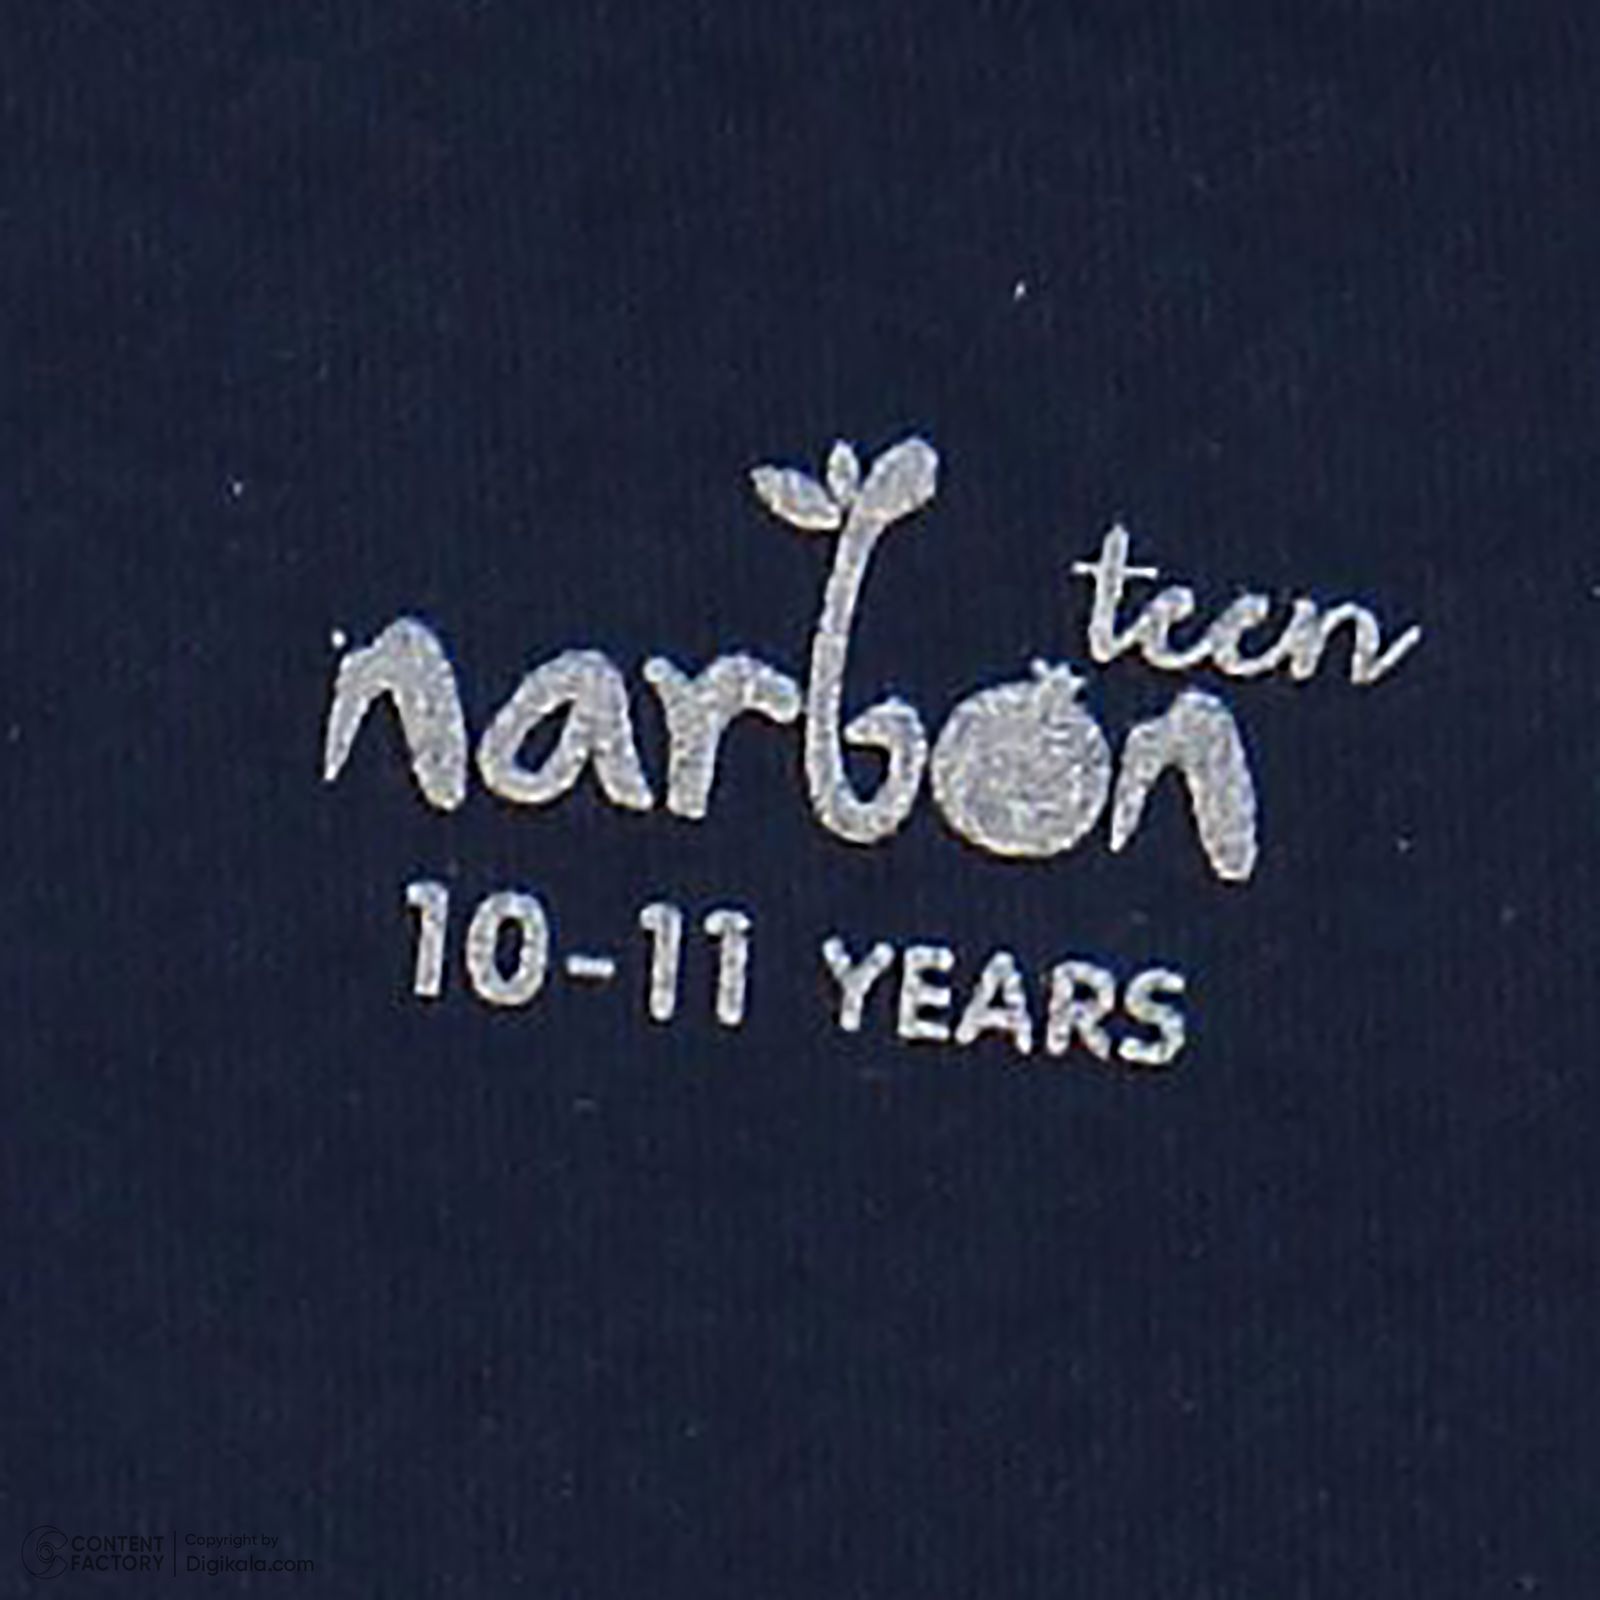 ست تی شرت و شلوار بچگانه ناربن مدل 497 رنگ سرمه ای -  - 8